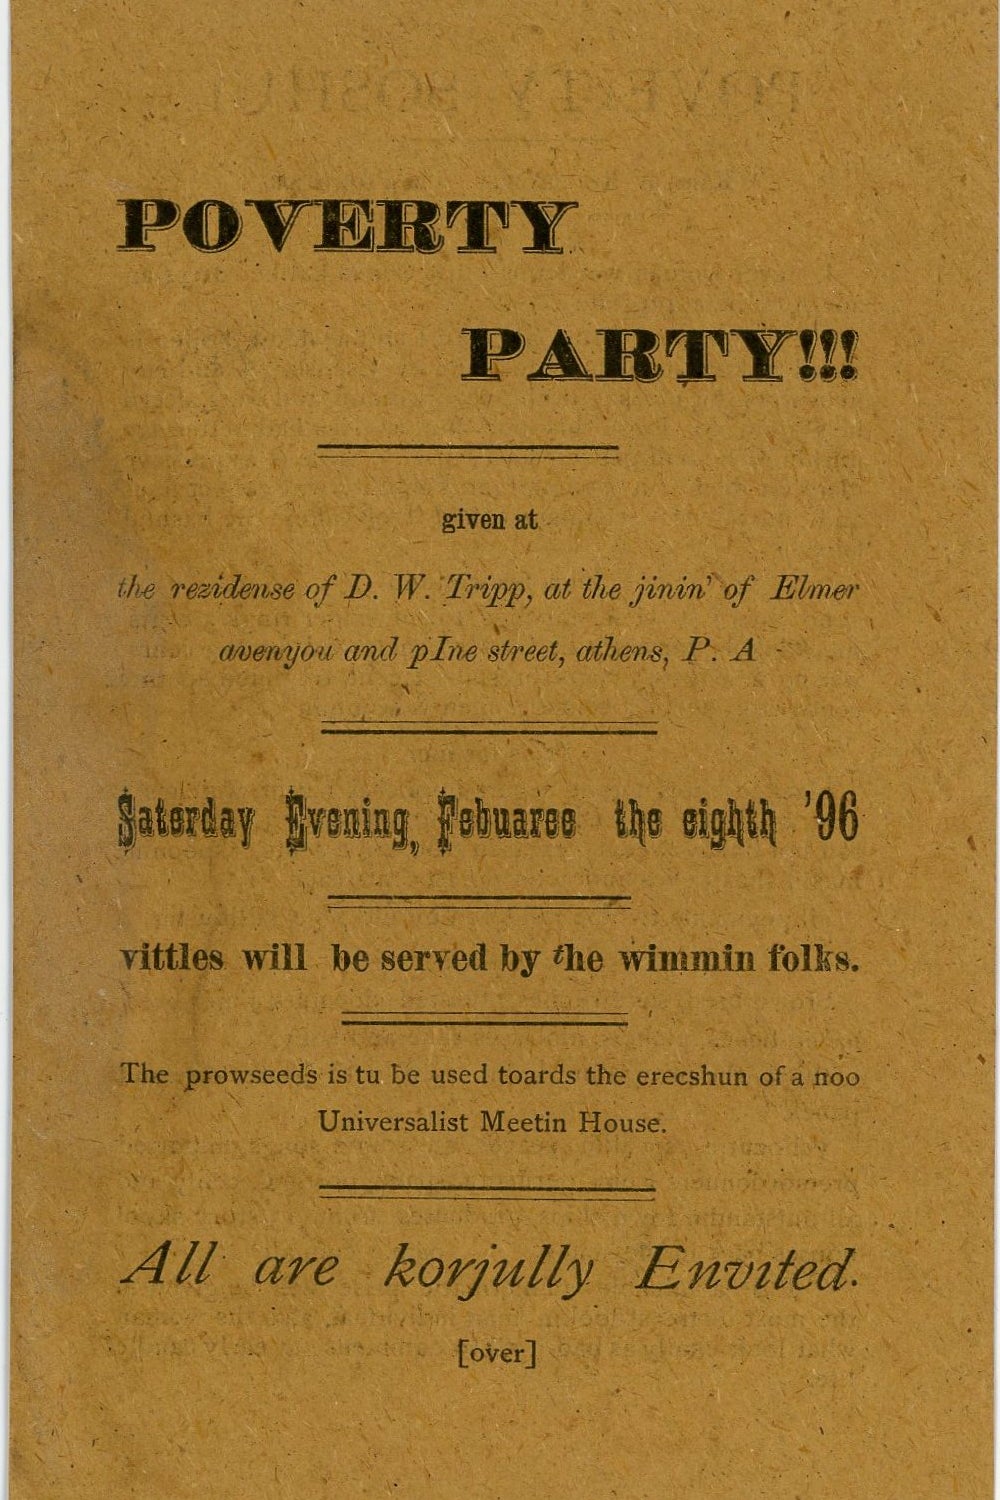 Poverty Party invitation